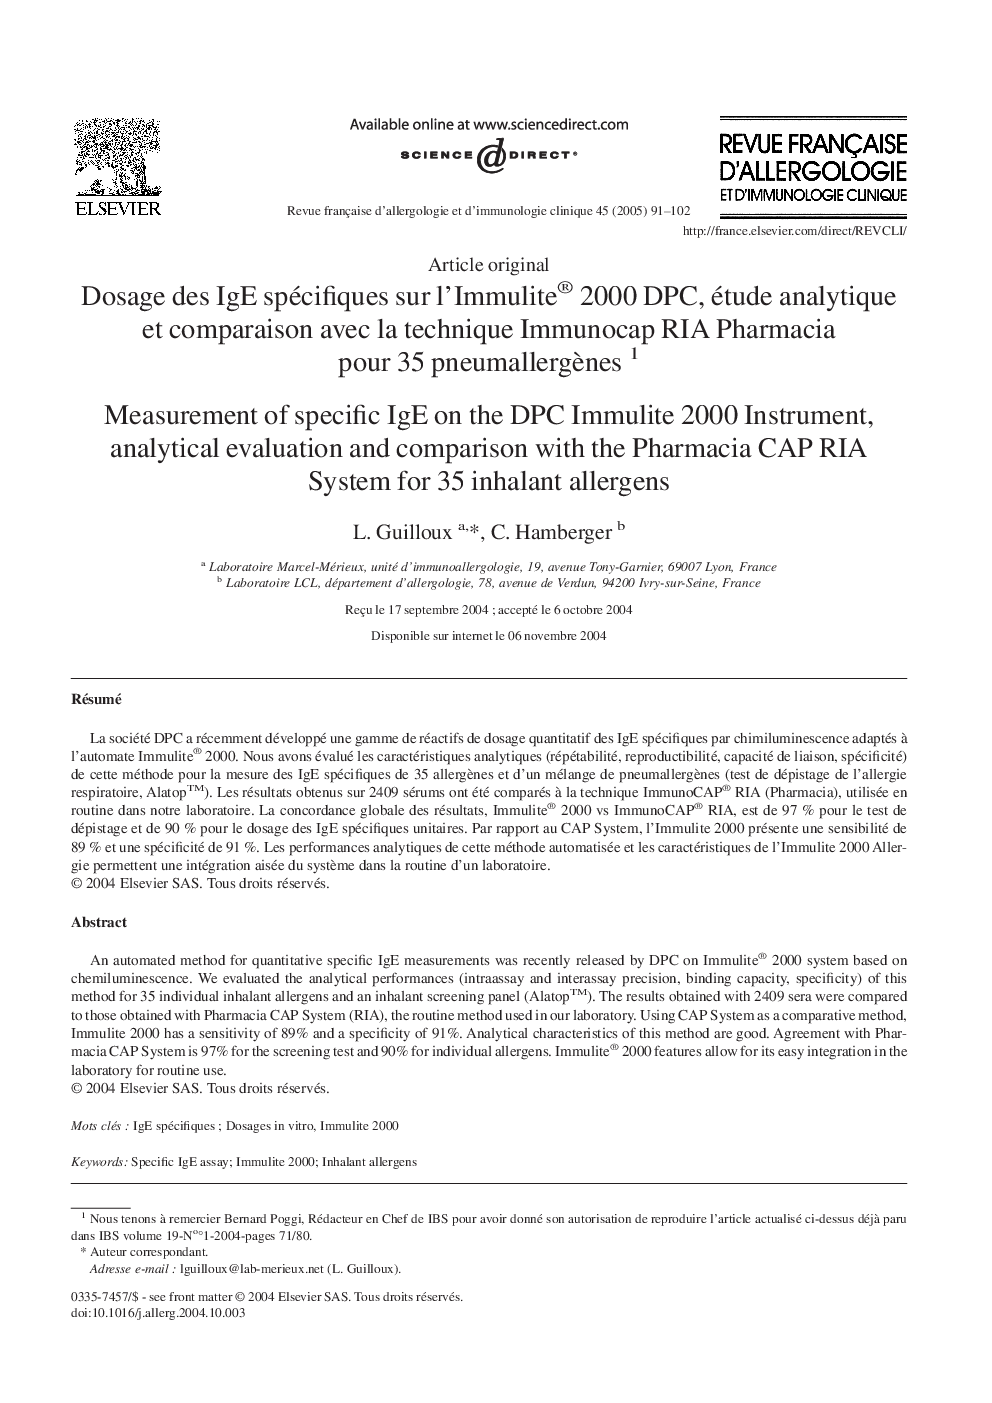 Dosage des IgE spécifiques sur l'Immulite® 2000 DPC, étude analytique et comparaison avec la technique Immunocap RIA Pharmacia pour 35 pneumallergÃ¨nes 1